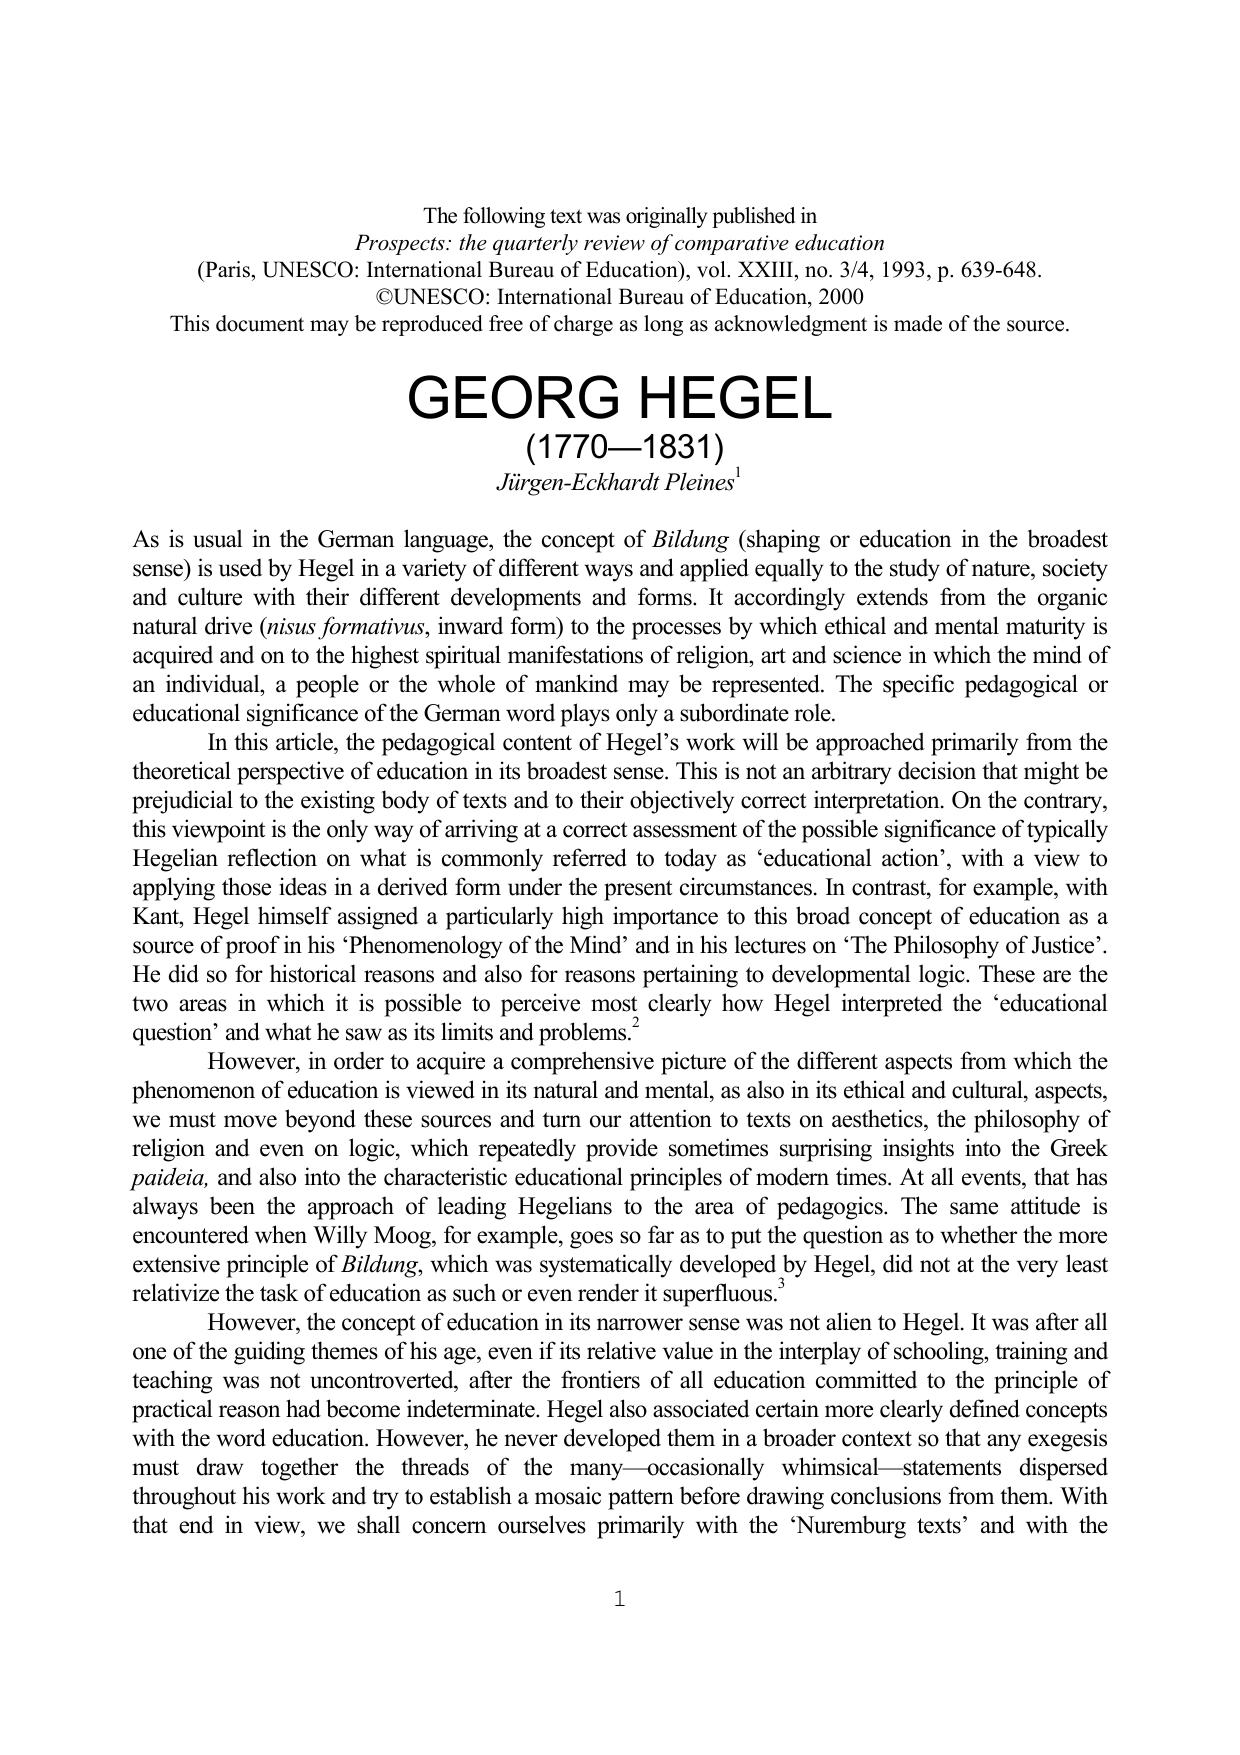 J rgen- Eckhardt Pleines1993 Georg Hegel